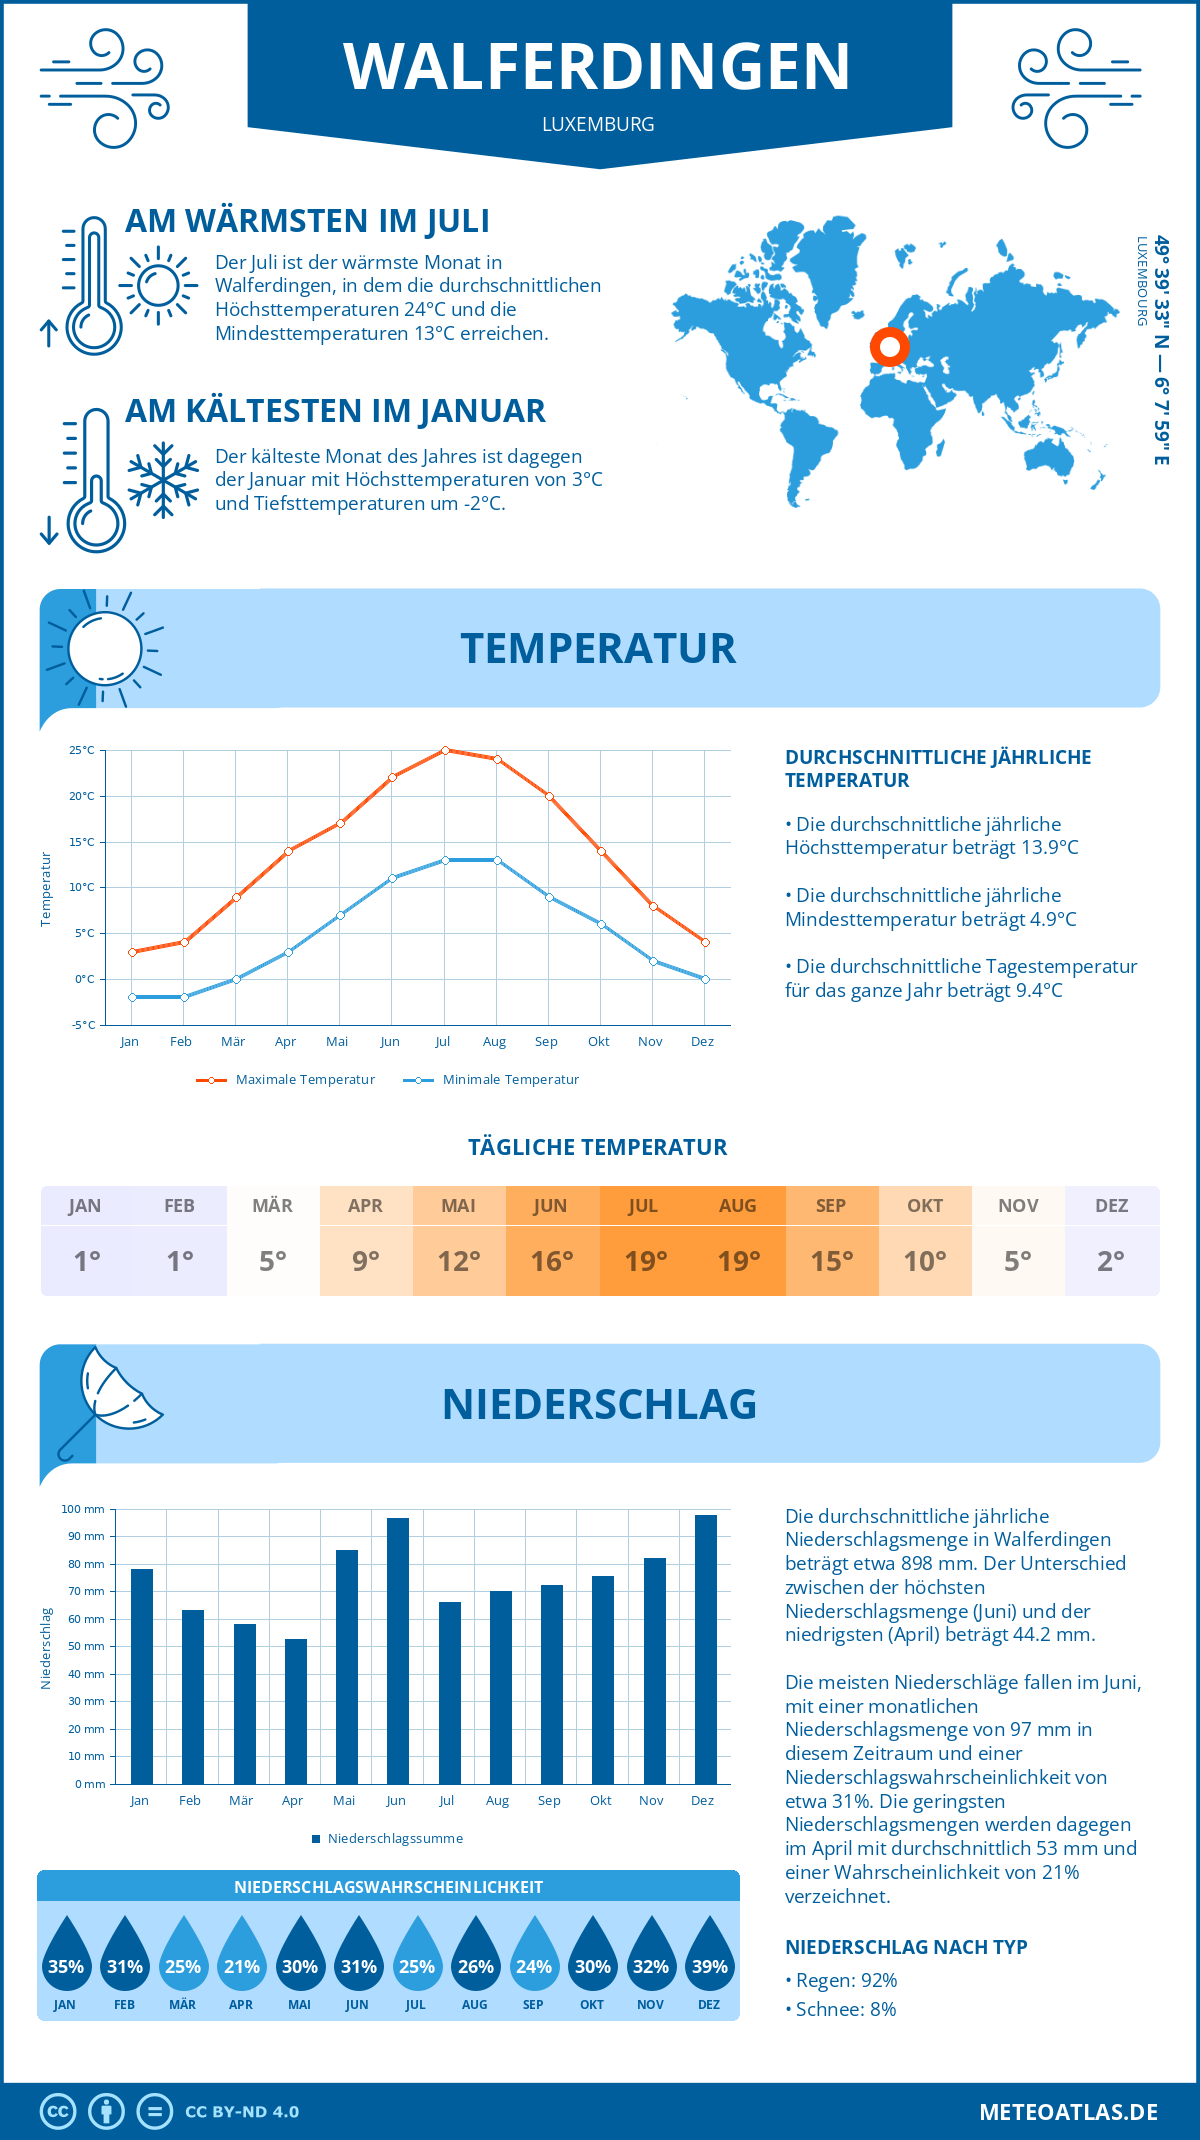 Wetter Walferdingen (Luxemburg) - Temperatur und Niederschlag